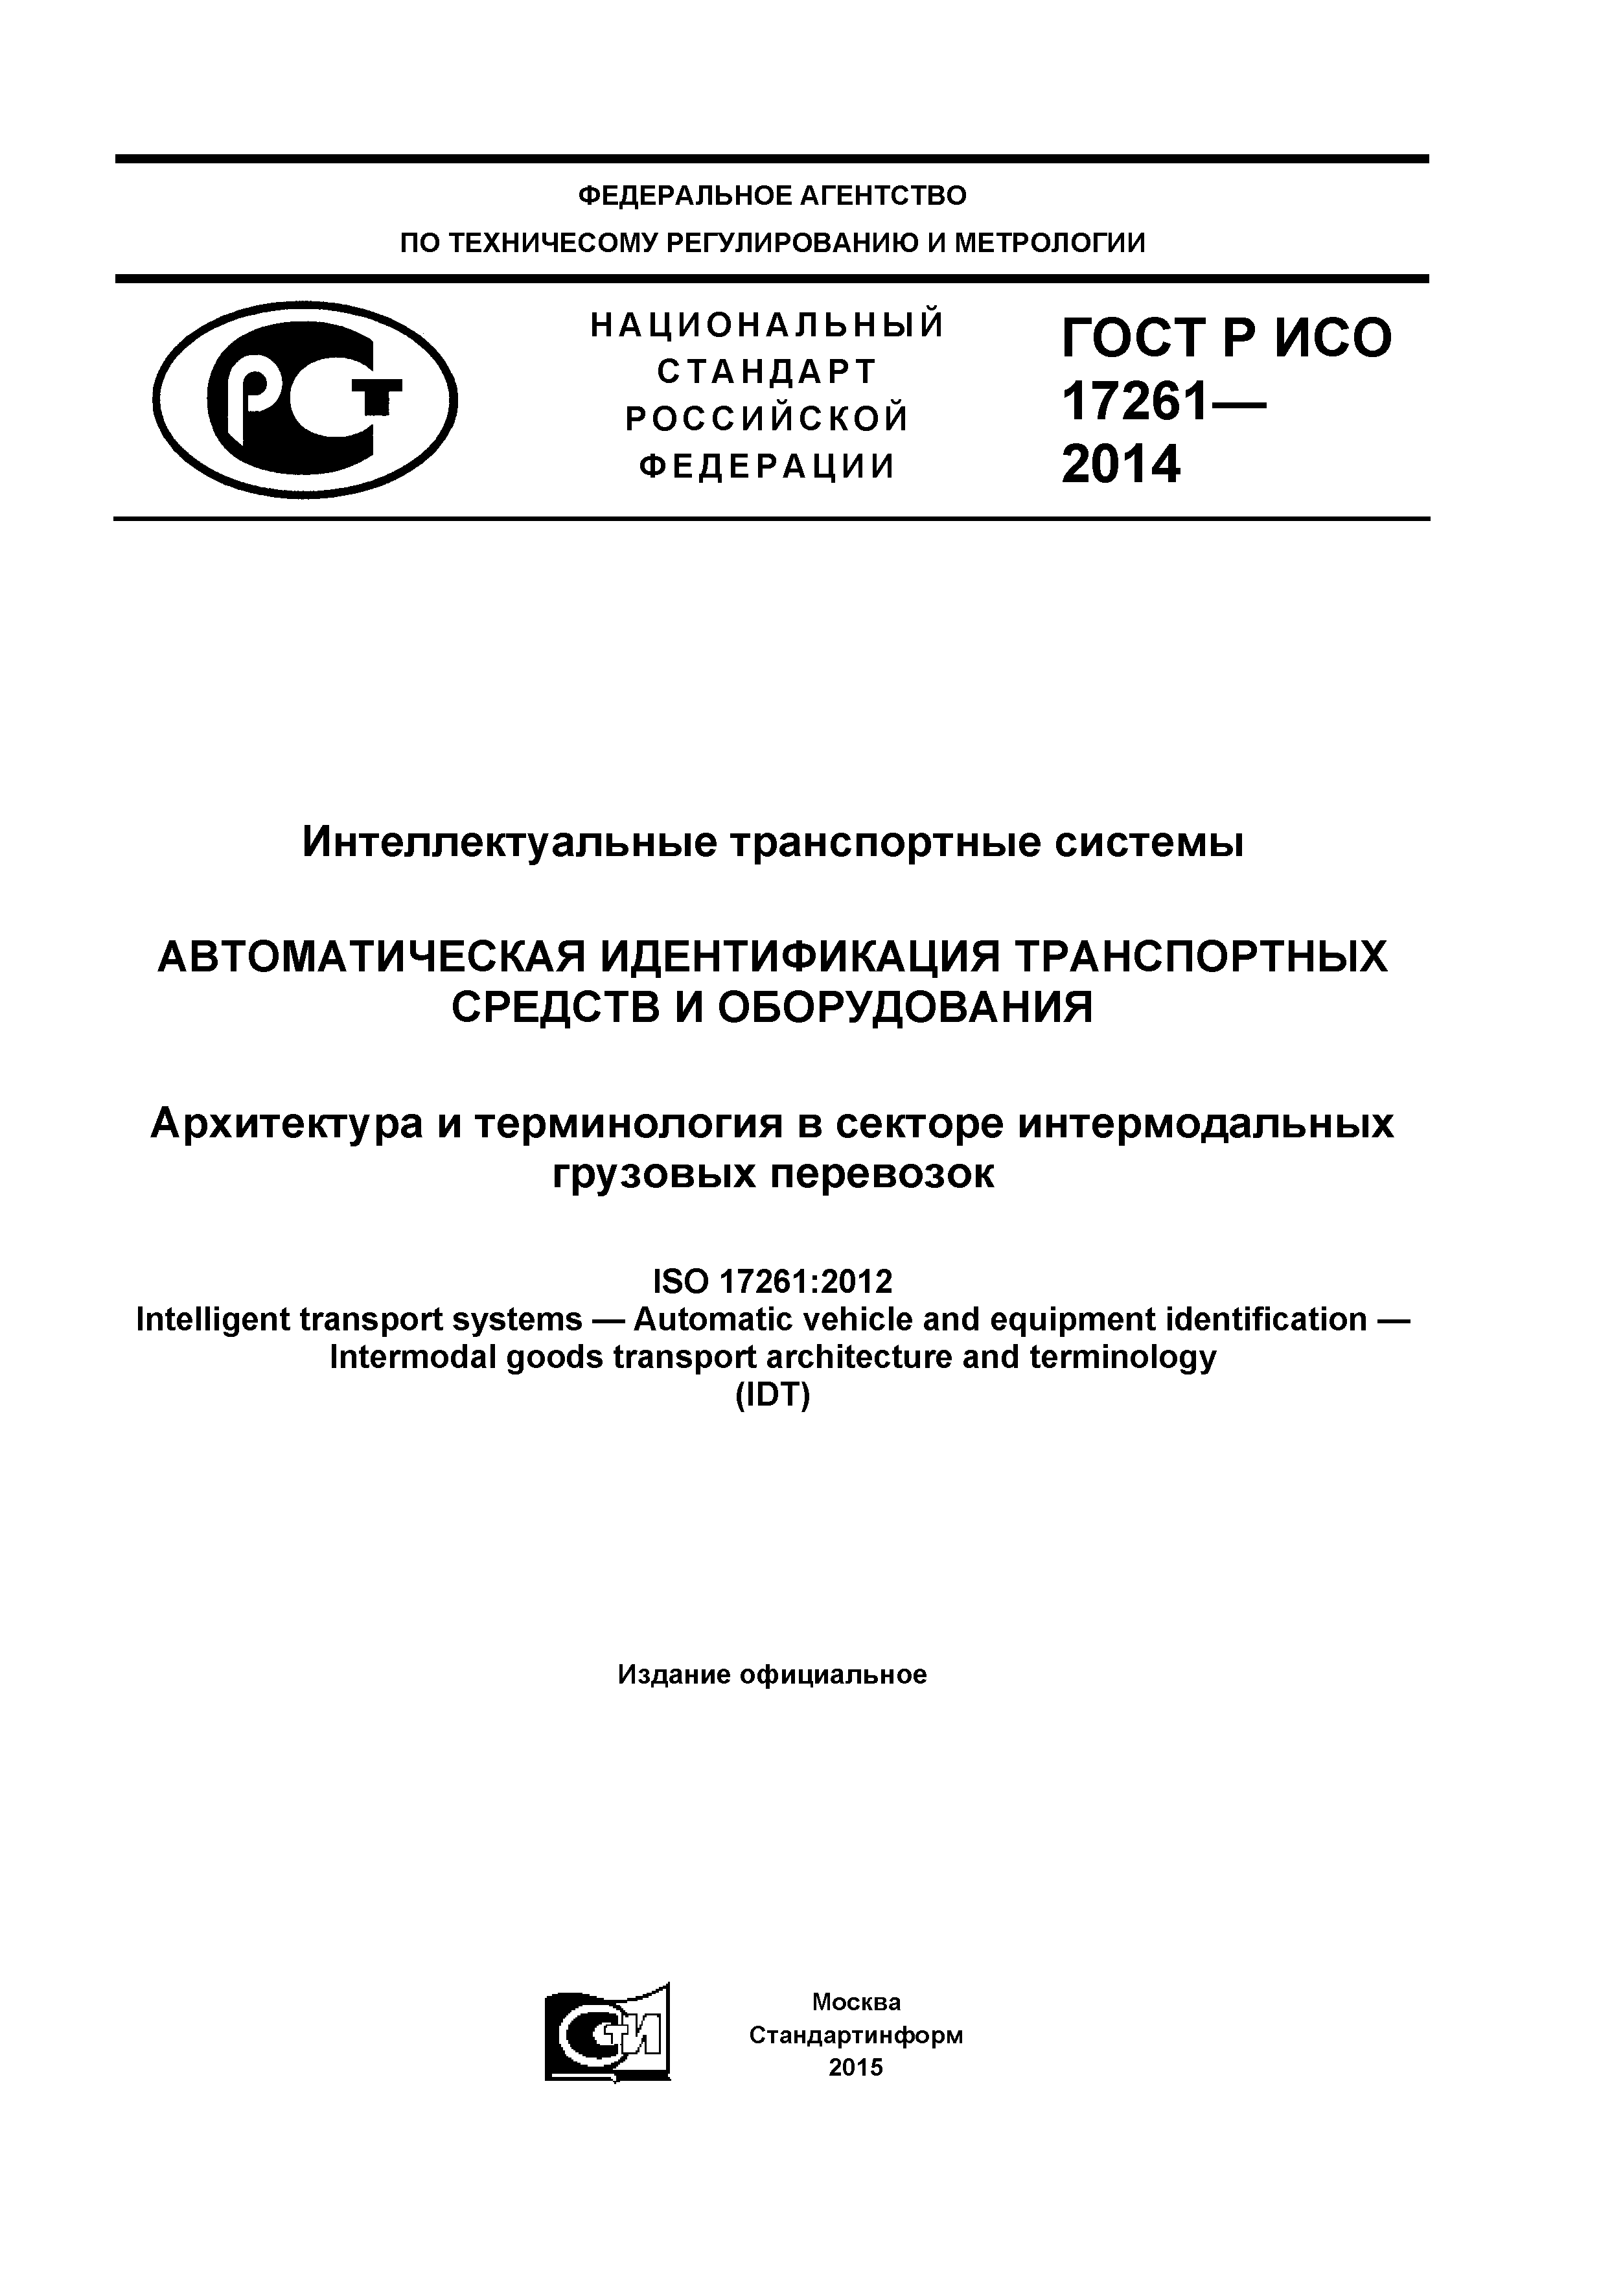 ГОСТ Р ИСО 17261-2014